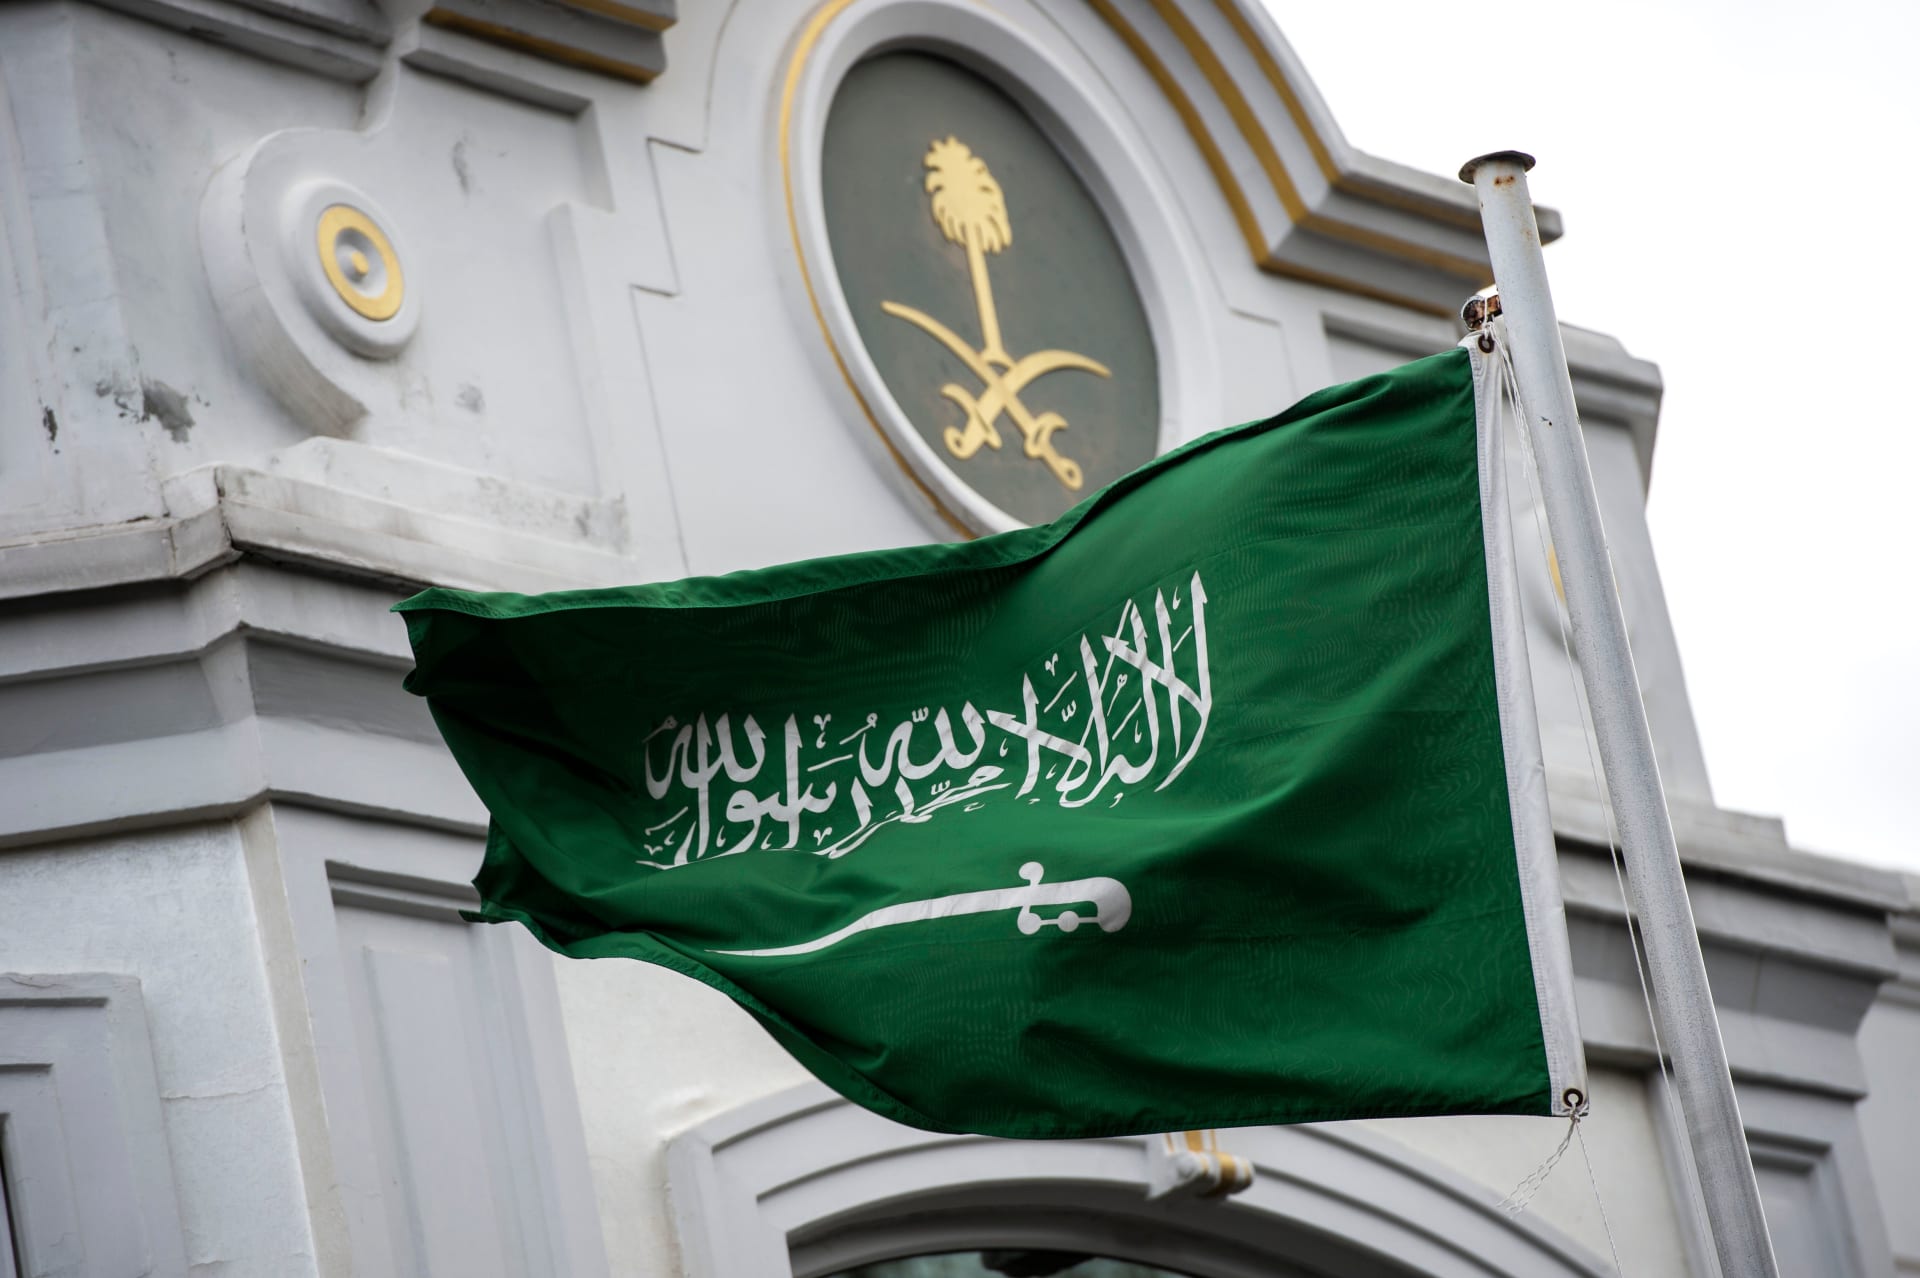 ماهي بطاقة القبائل النازحة الجديدة التي اصدرته االحكومة  السعودية ؟